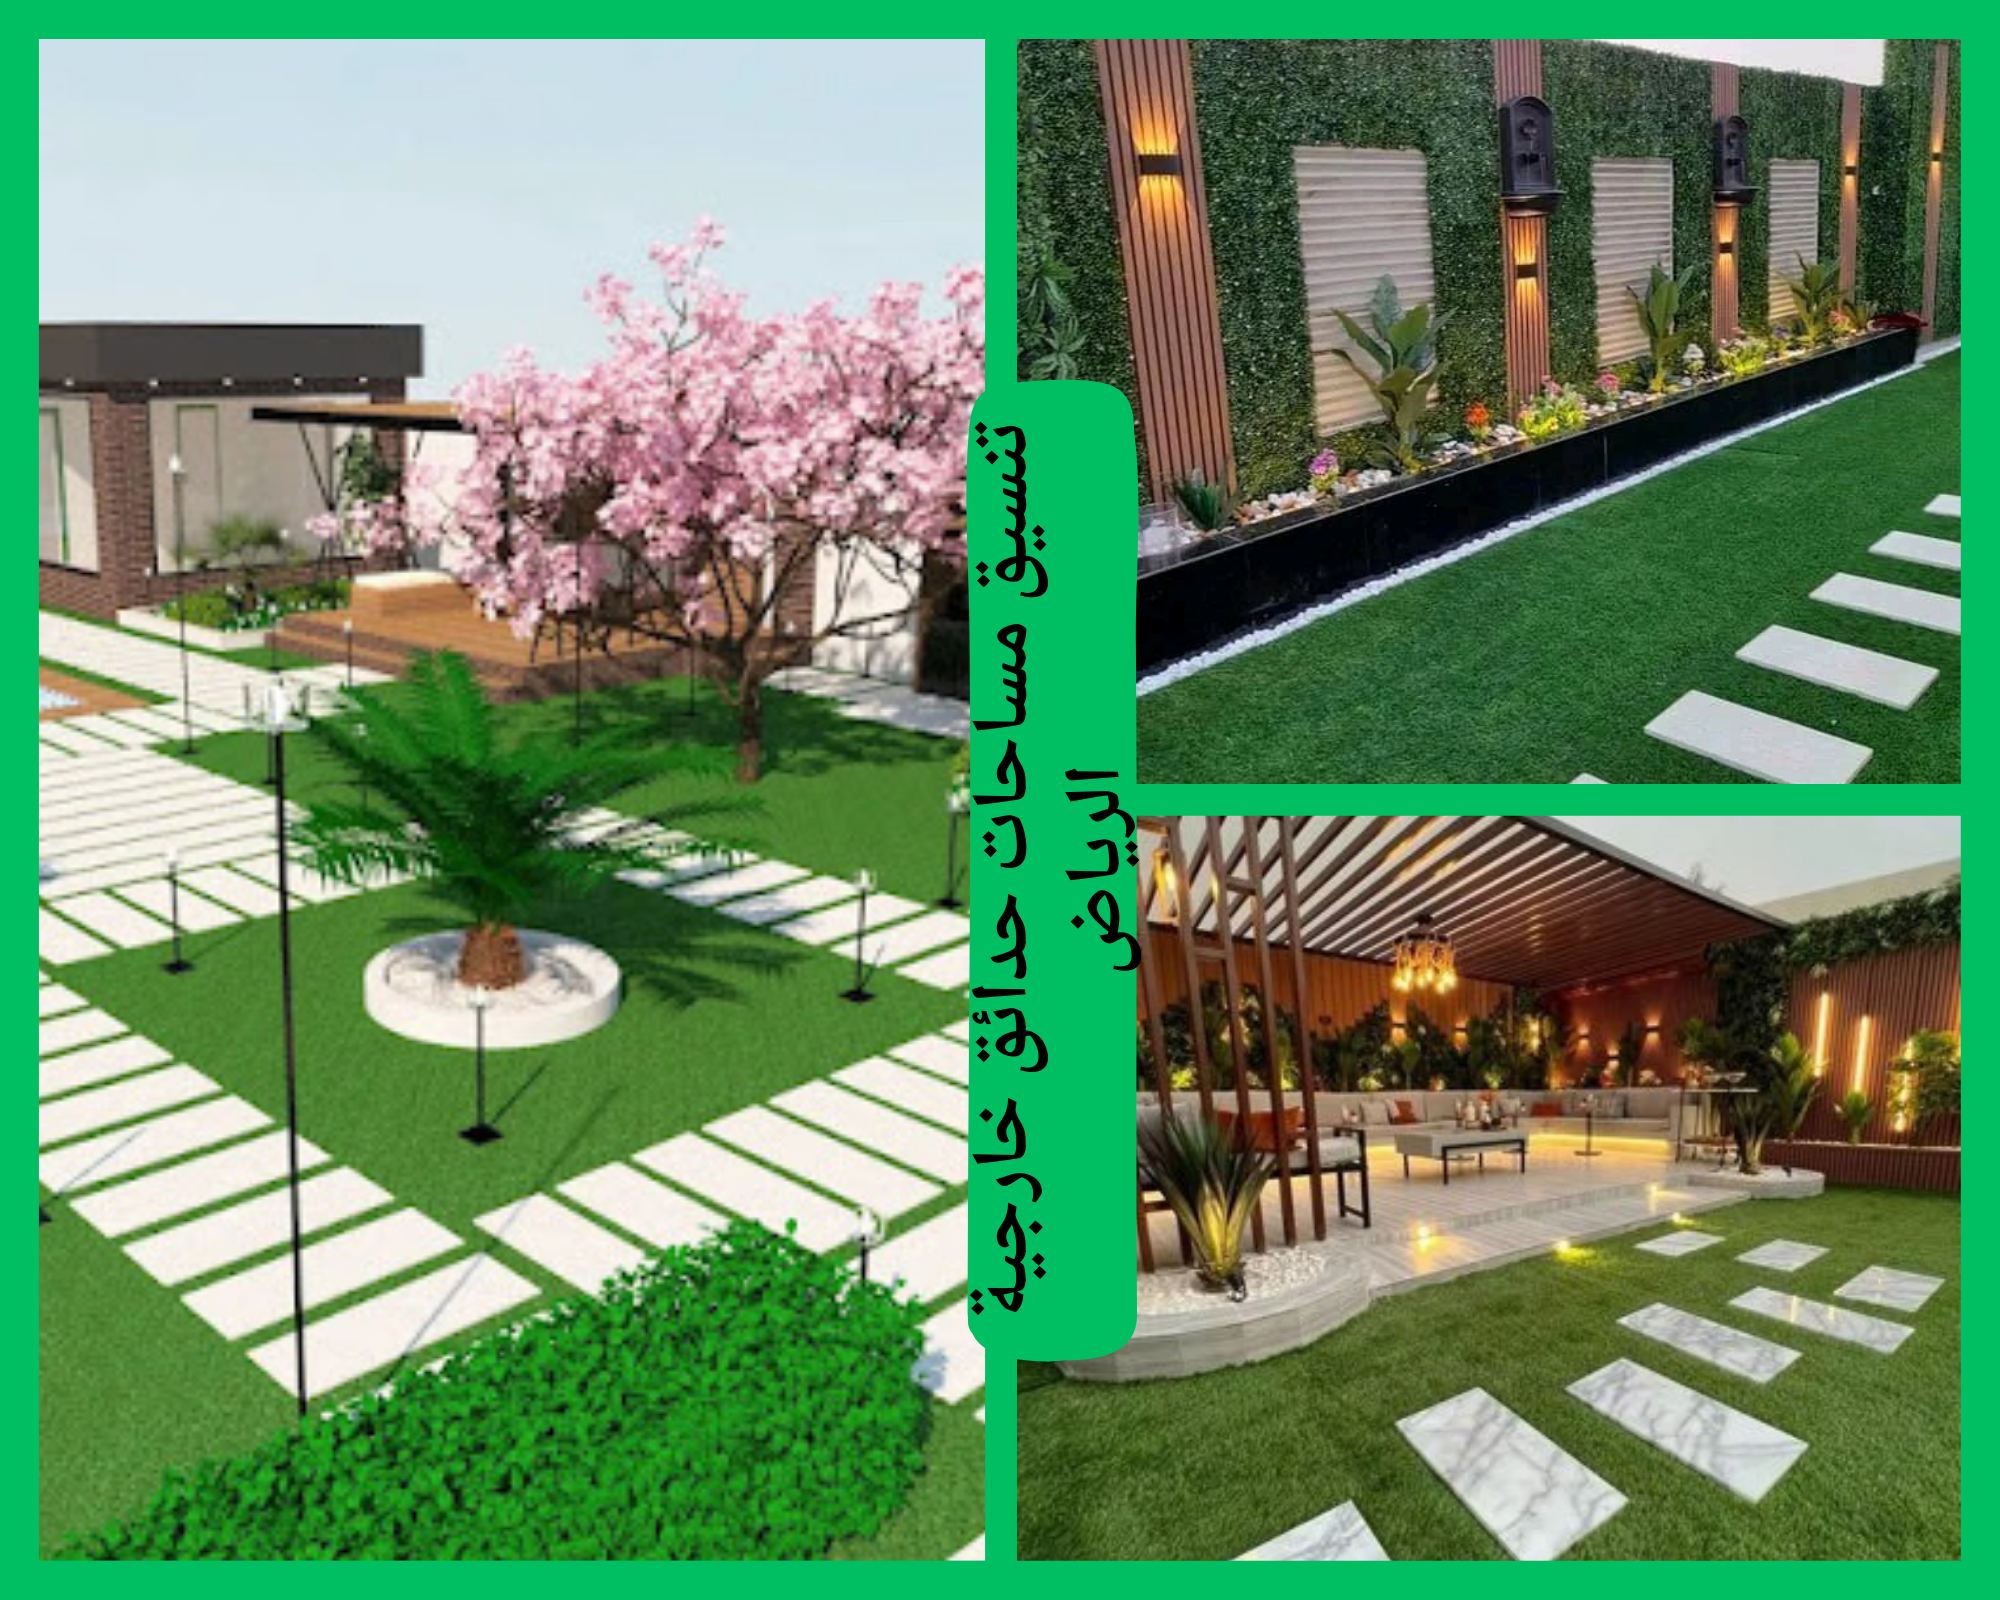 تنسيق المساحات الخضراء العامة في الرياض بأحدث الأفكار والتصاميم بالرياض